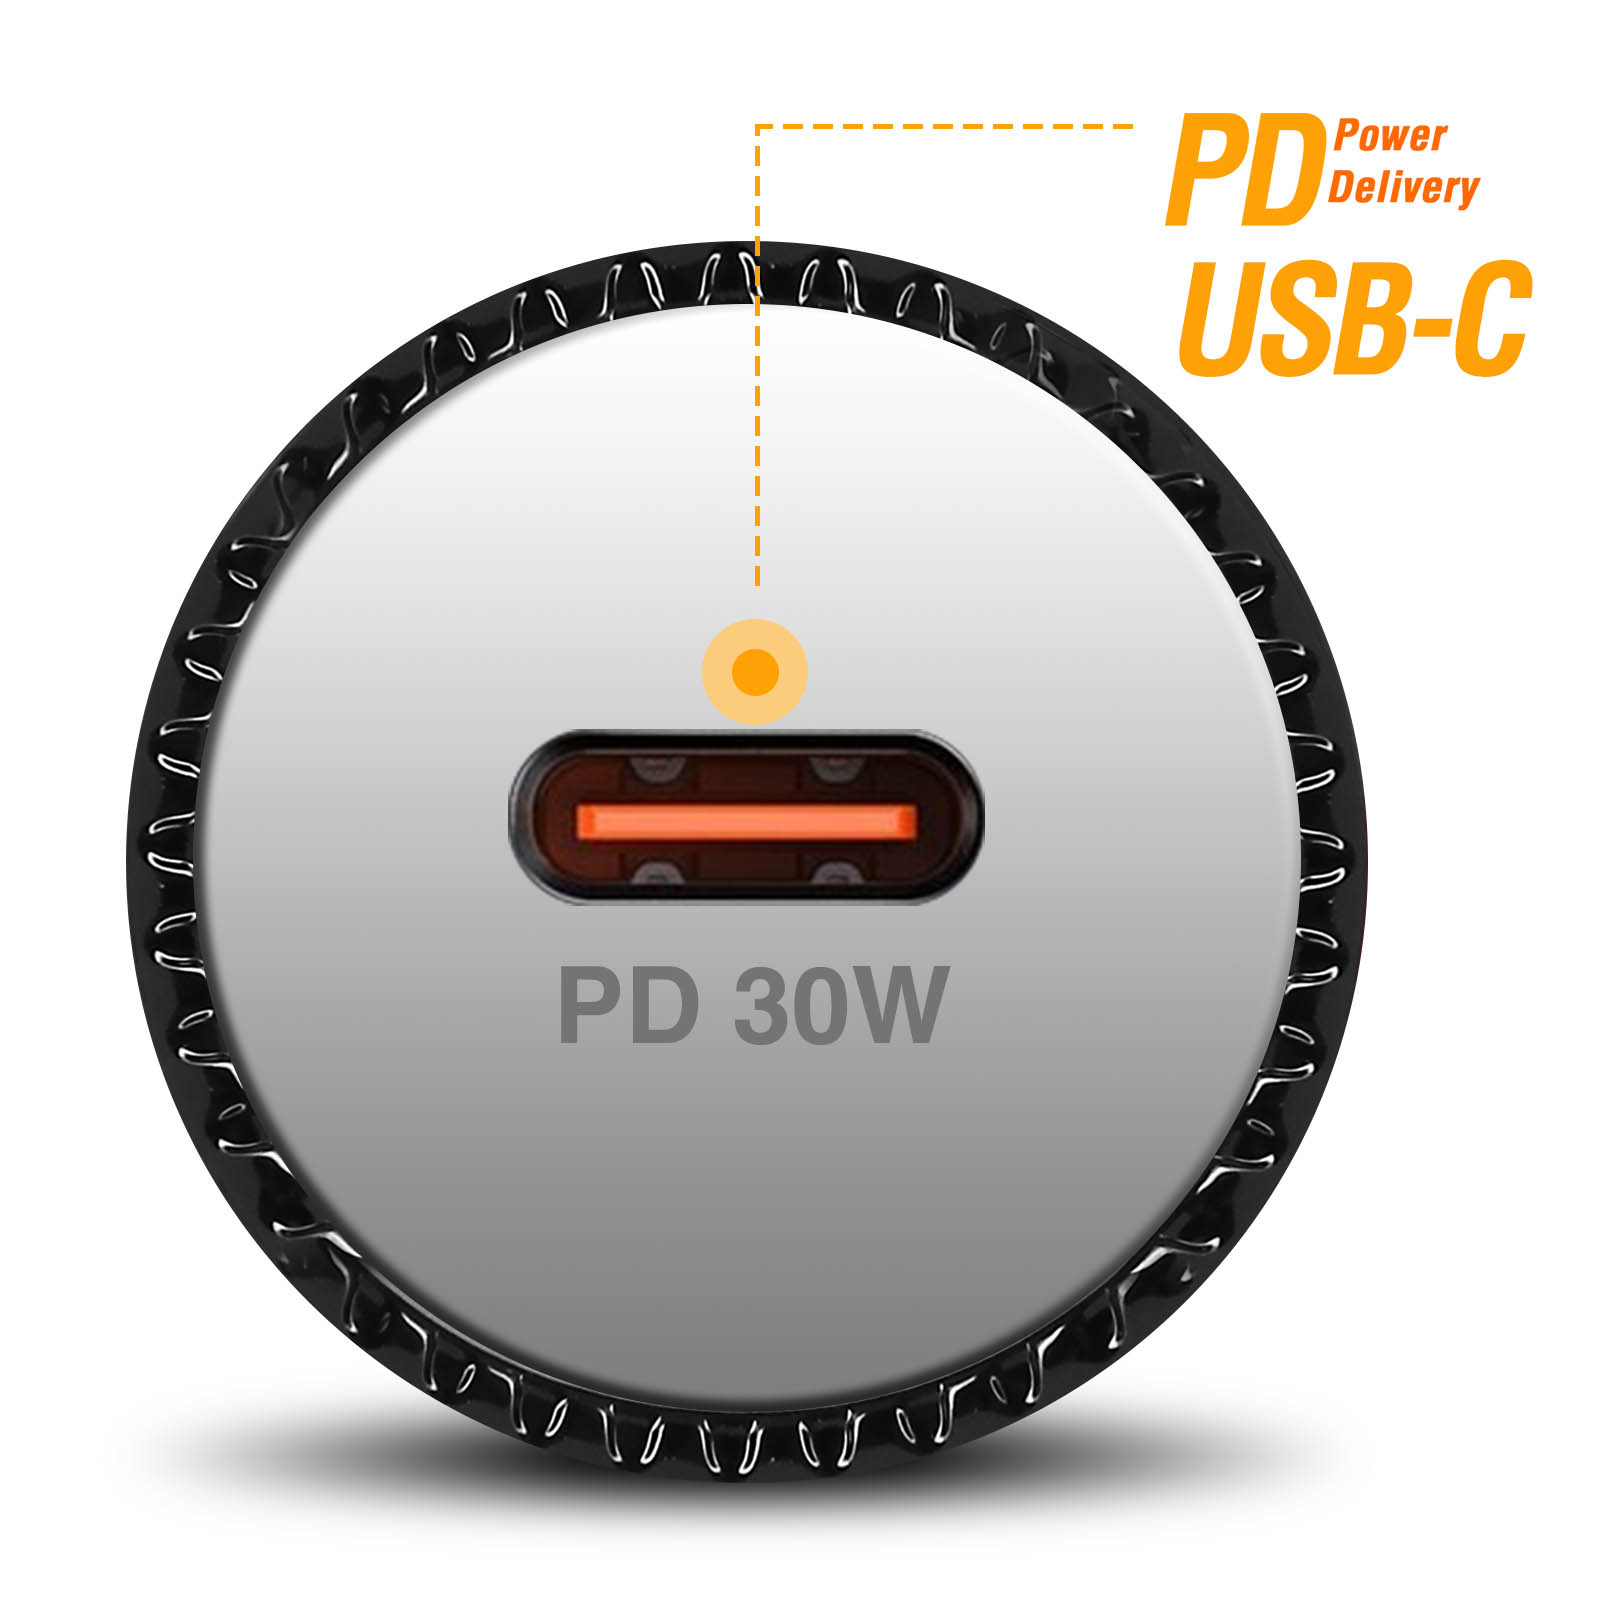 Caricatore da accendisigari USB-C 30W ricarica veloce Power Delivery, LinQ  - bianco - Italiano